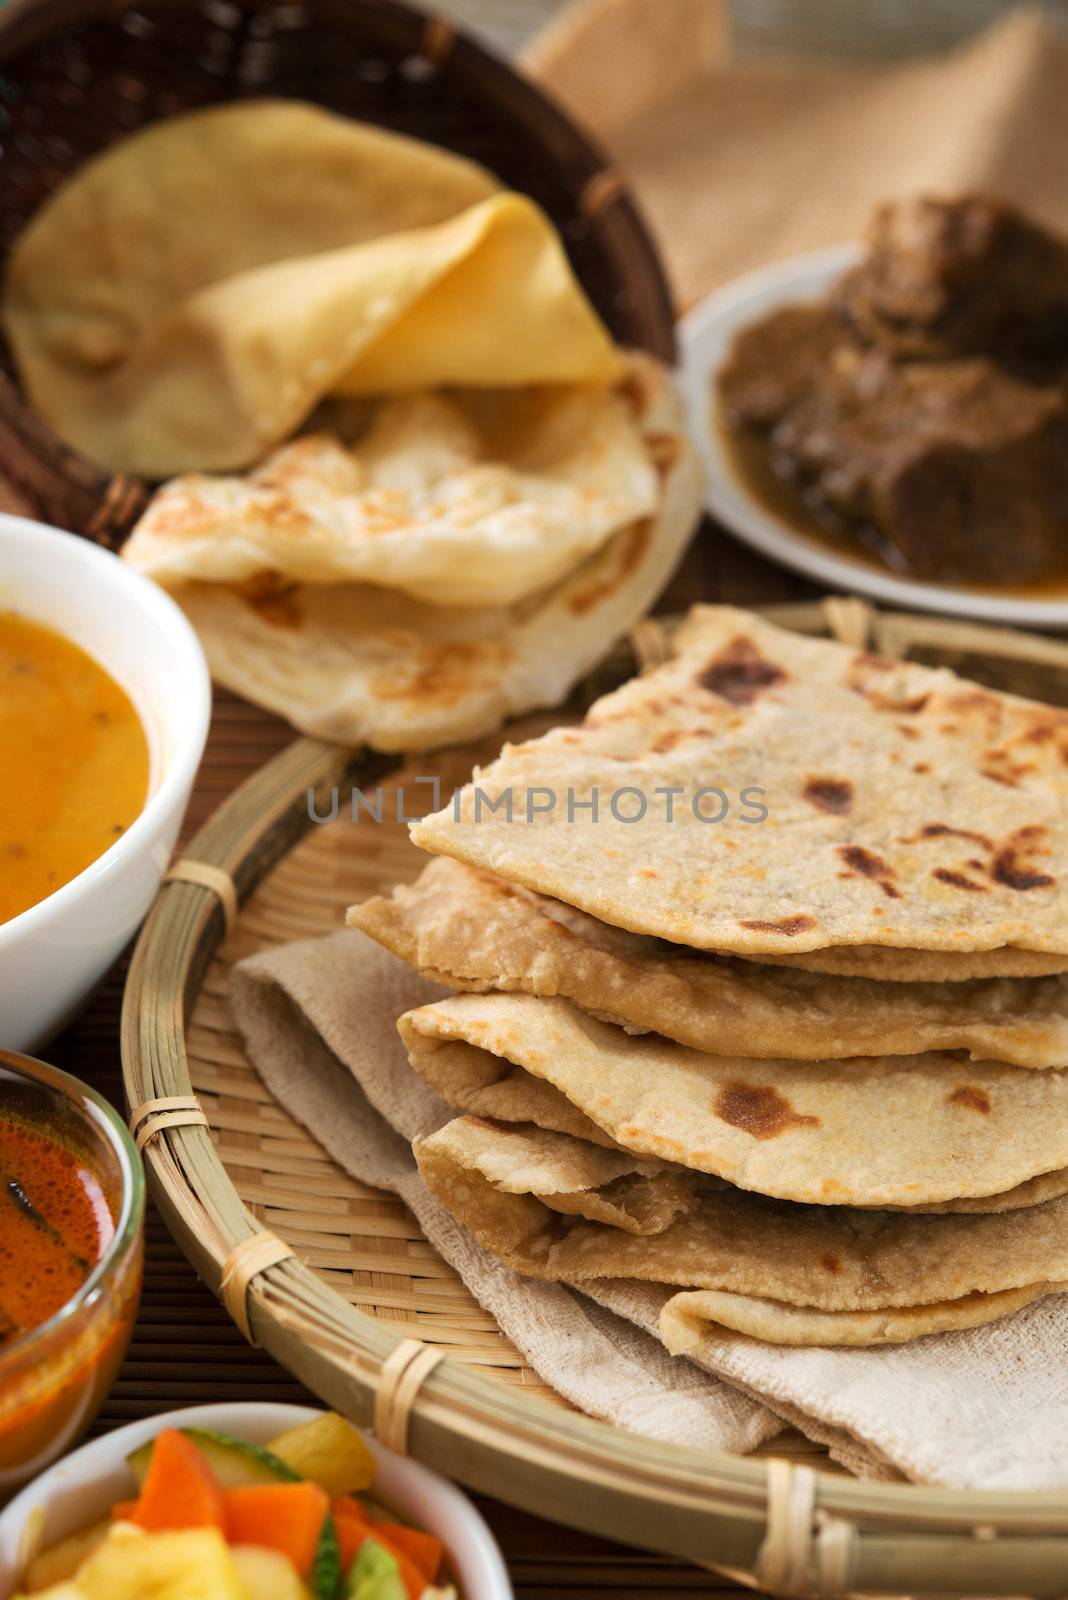 Chapati or Flat bread by szefei